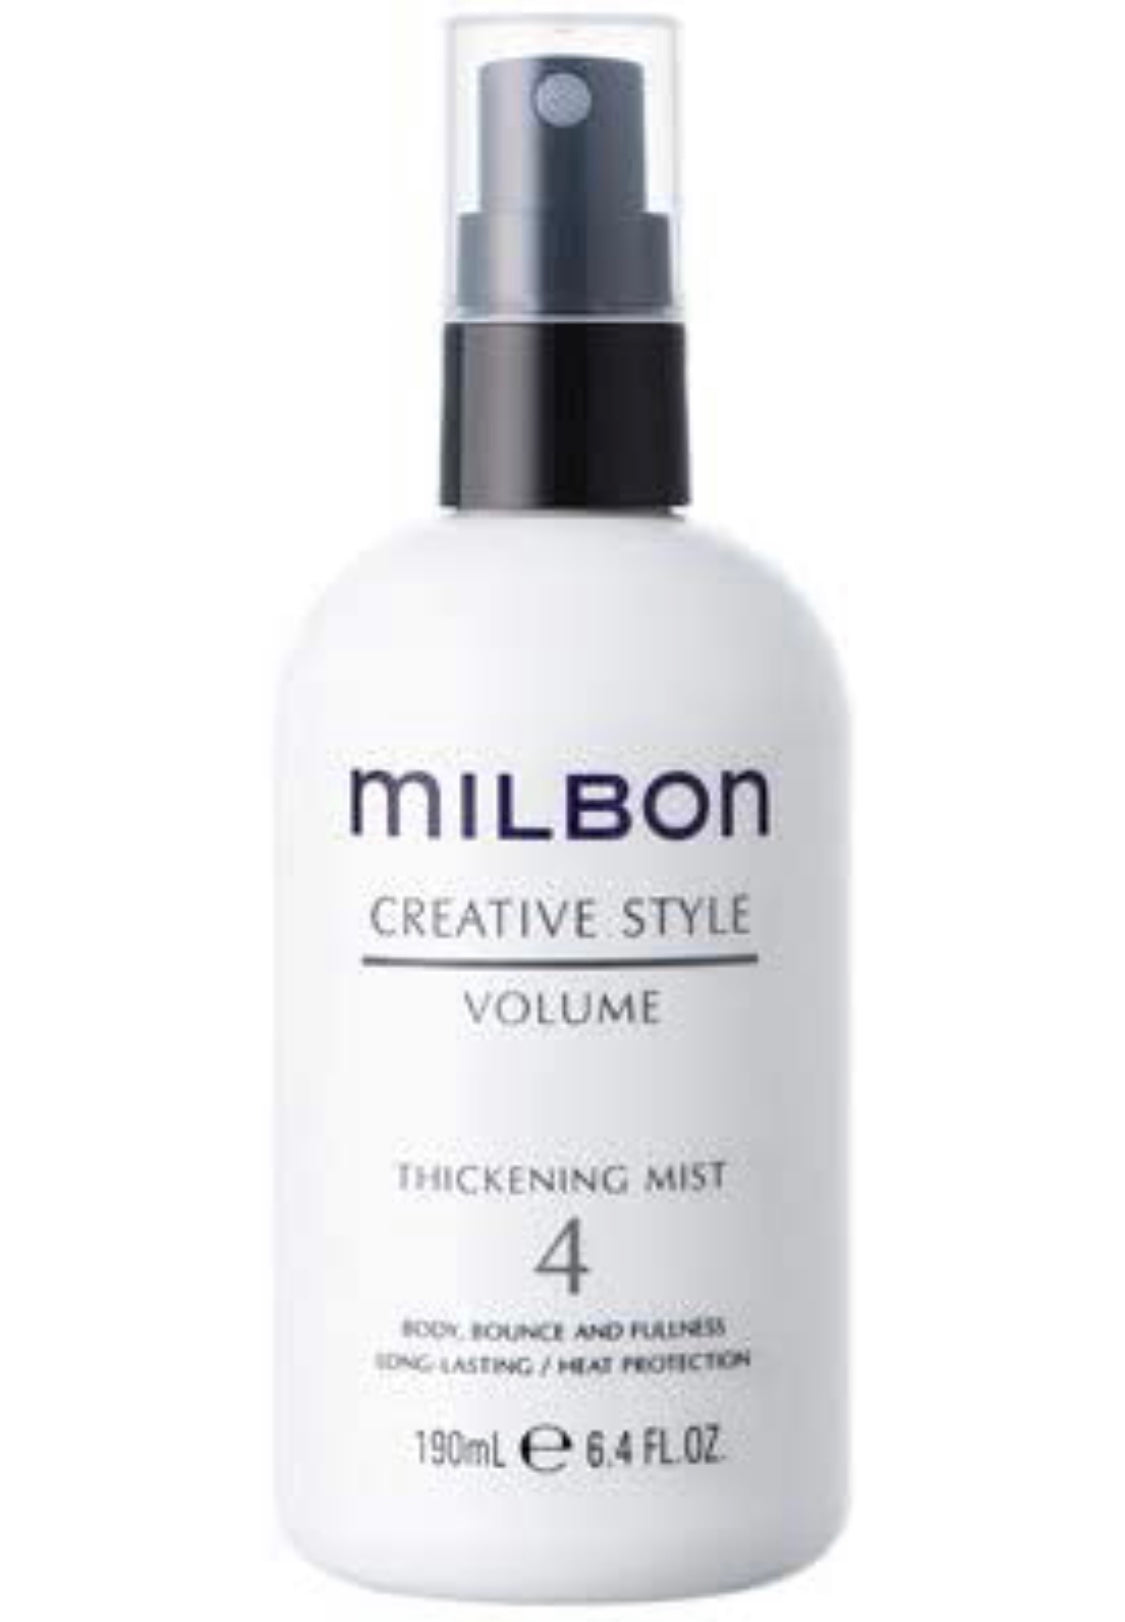 Milbon - Creative style Thickening mist  #4 6.4 fl. oz. / 190 ml